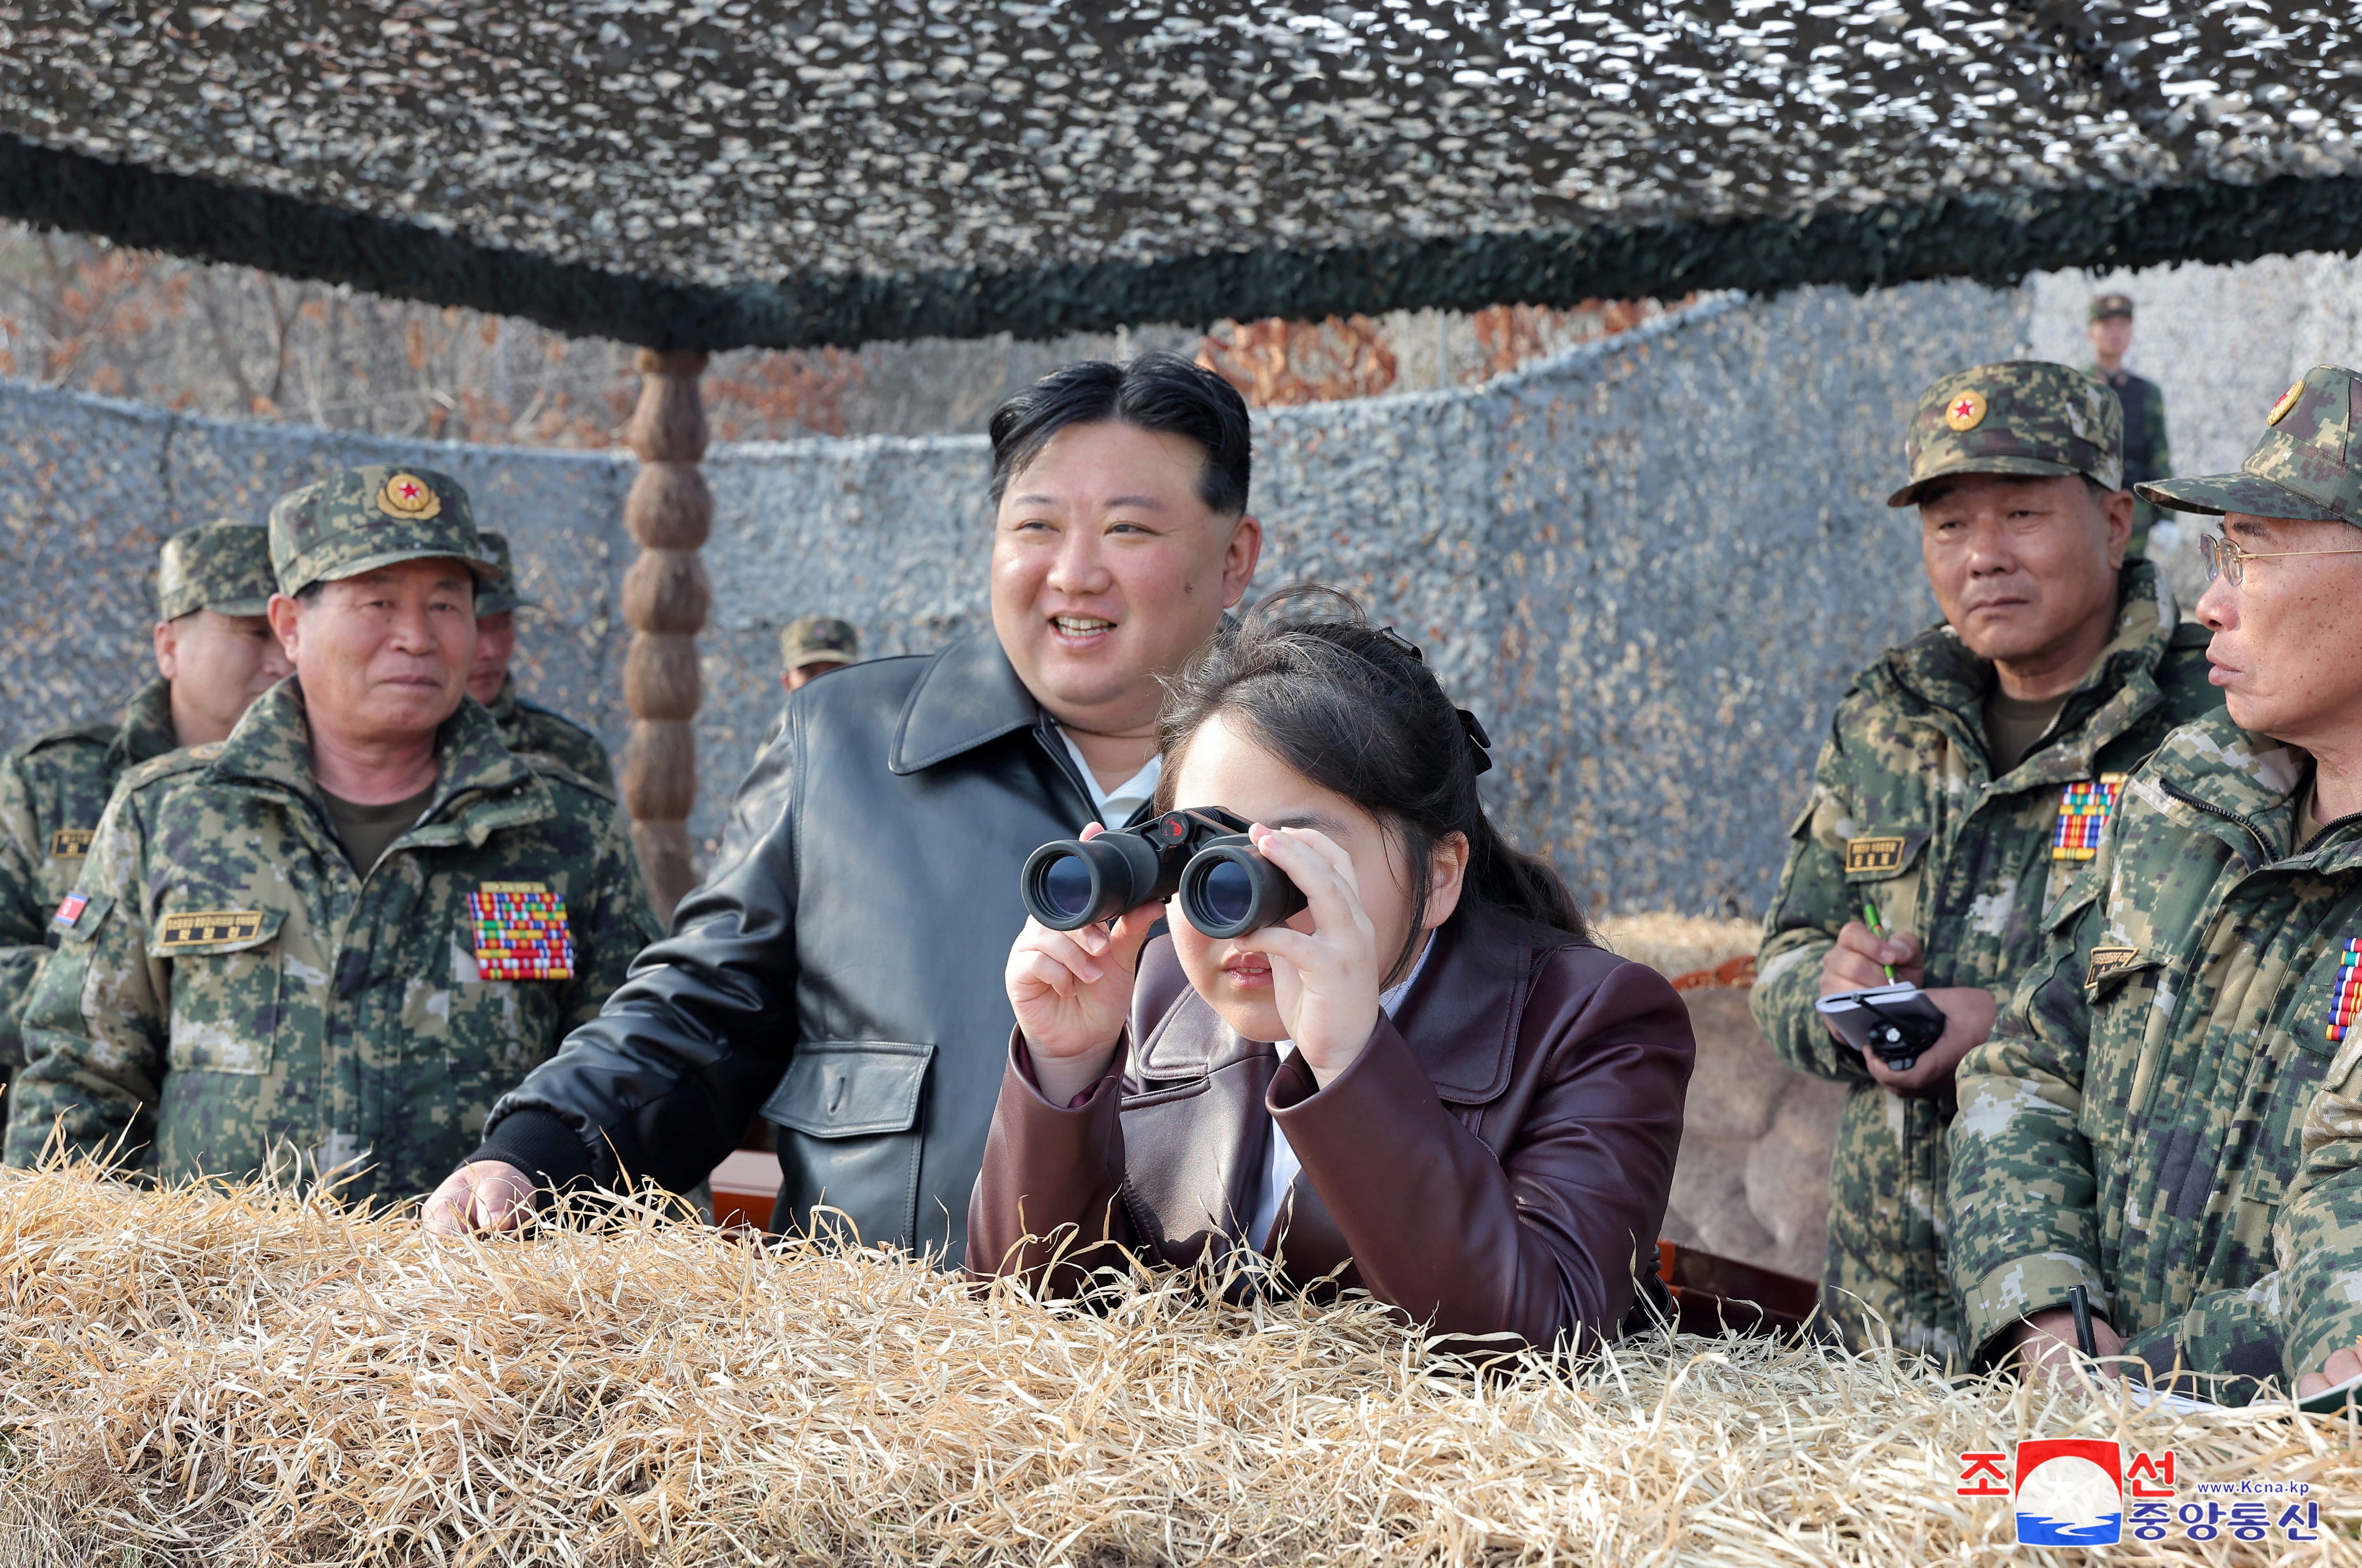 Die Tochter des nordkoreanischen Machthabers Kim Jong Un, Kim Ju Ae, blickt durch ein Fernglas, während sie neben ihrem Vater und nordkoreanischem Militärpersonal steht.